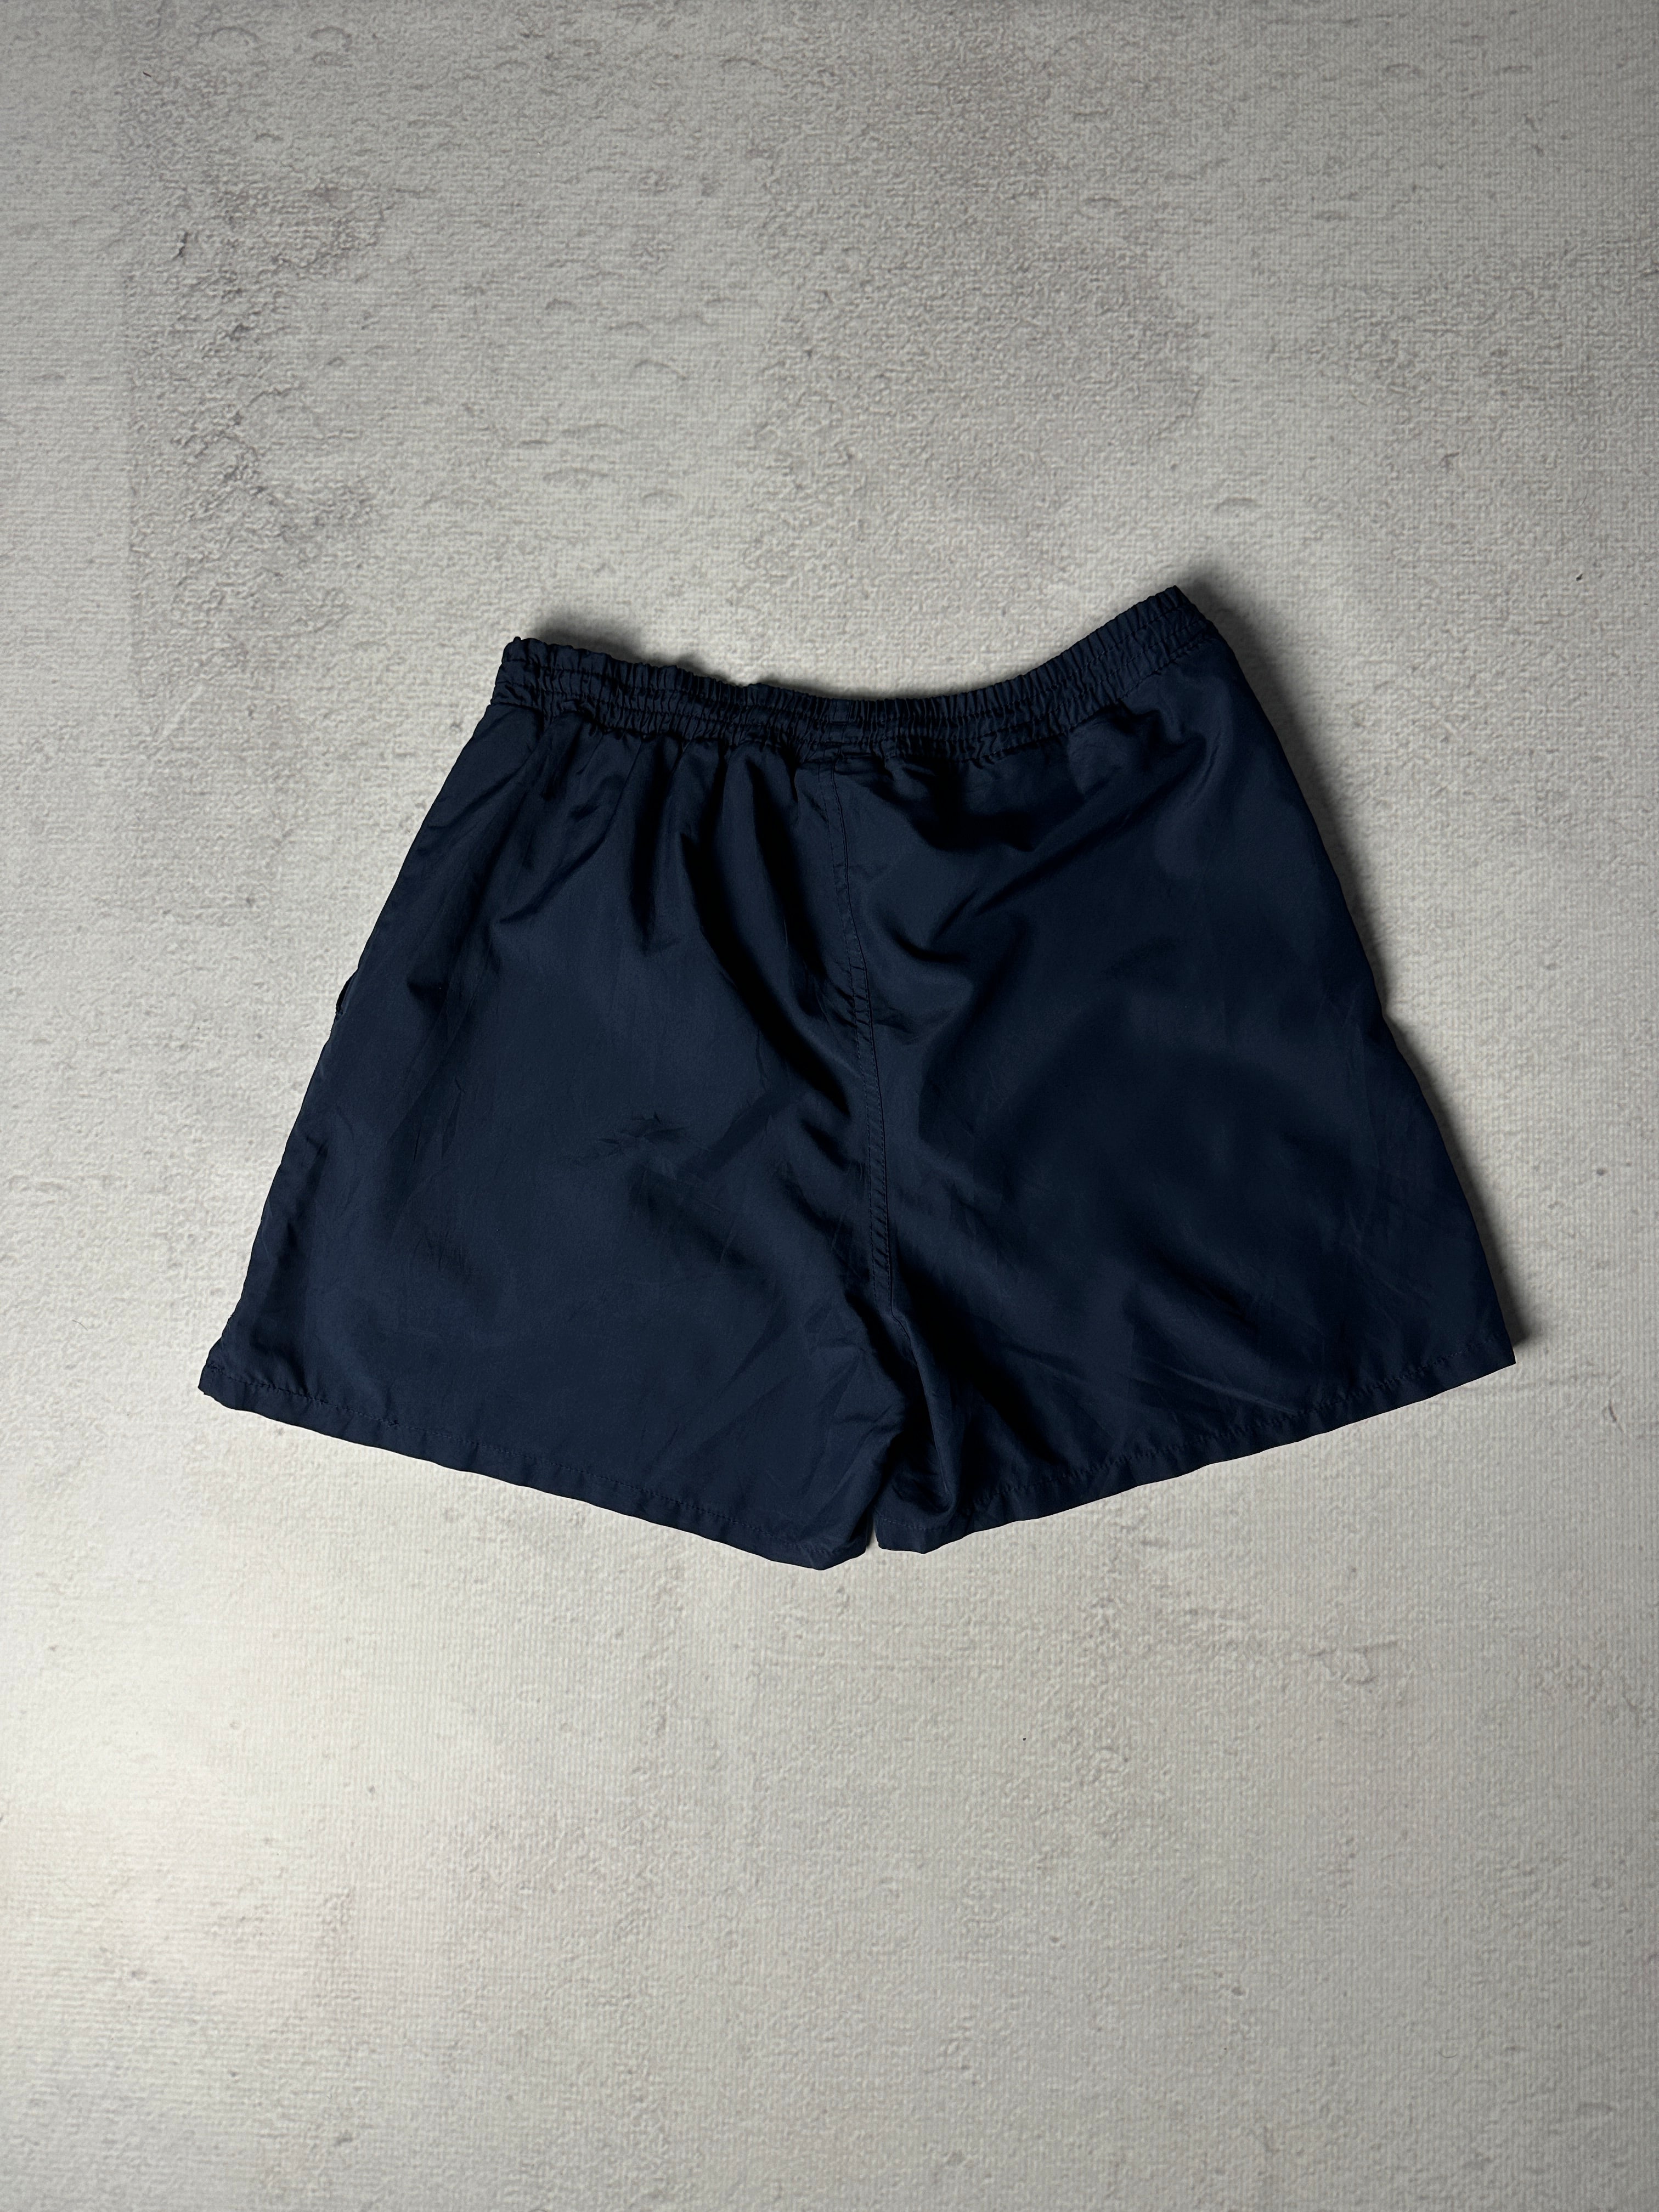 Vintage Reebok Shorts - Men's Medium